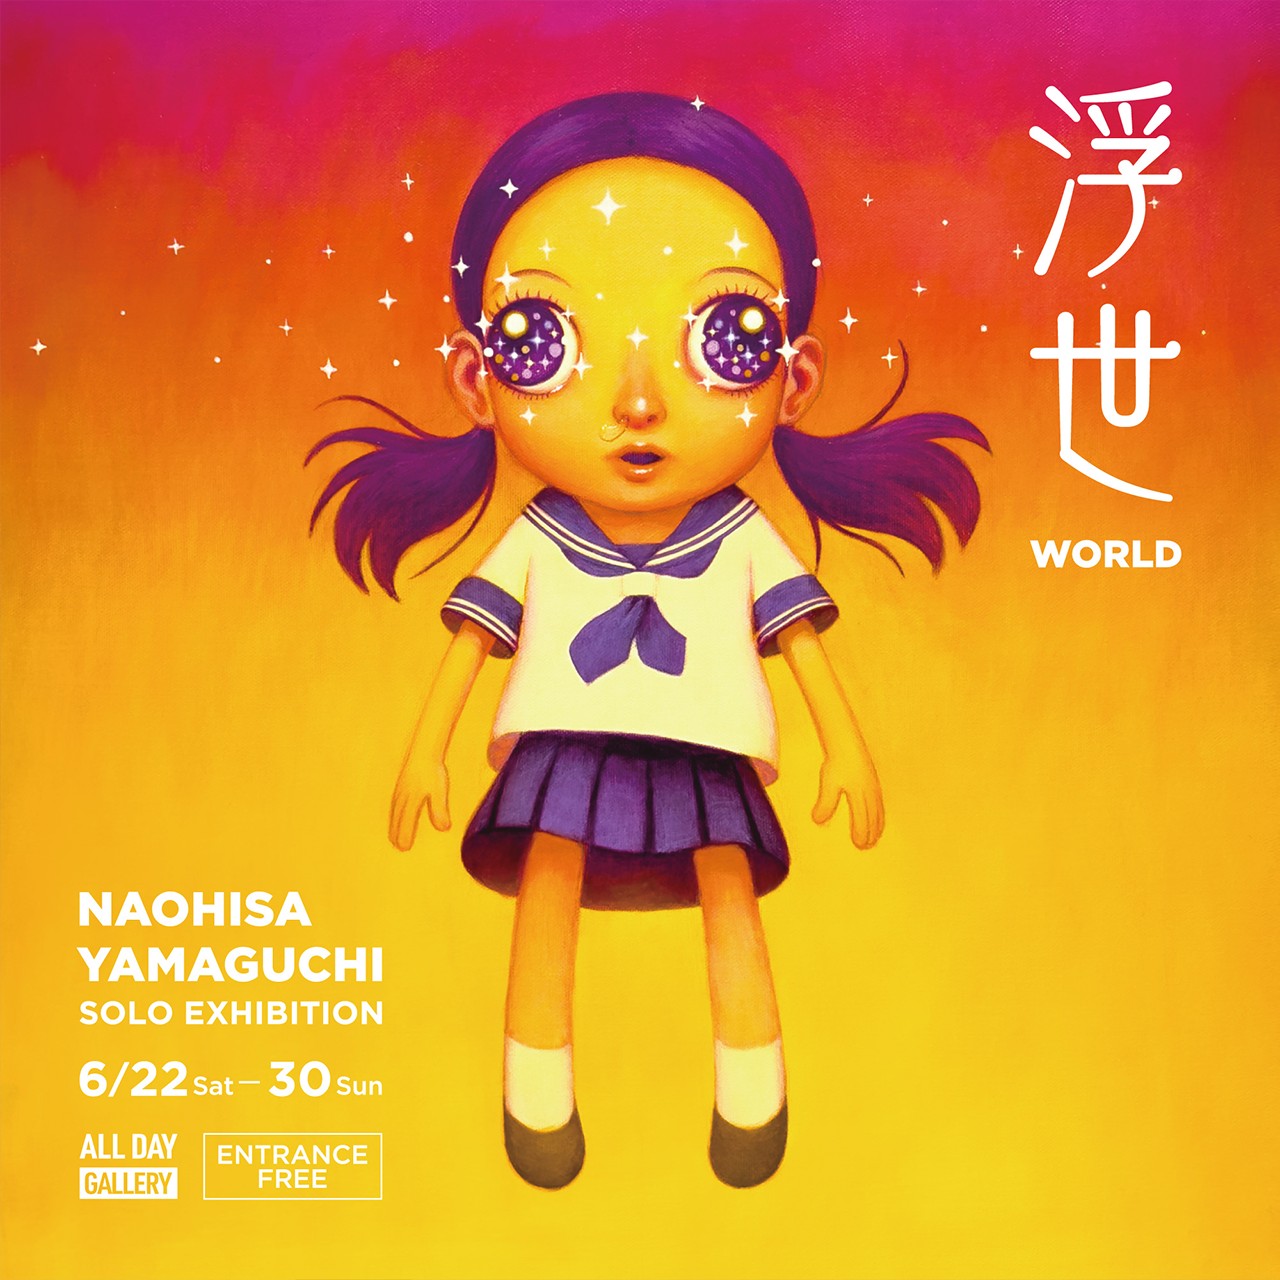 NAOHISA YAMAGUCHI SOLO EXHIBITION